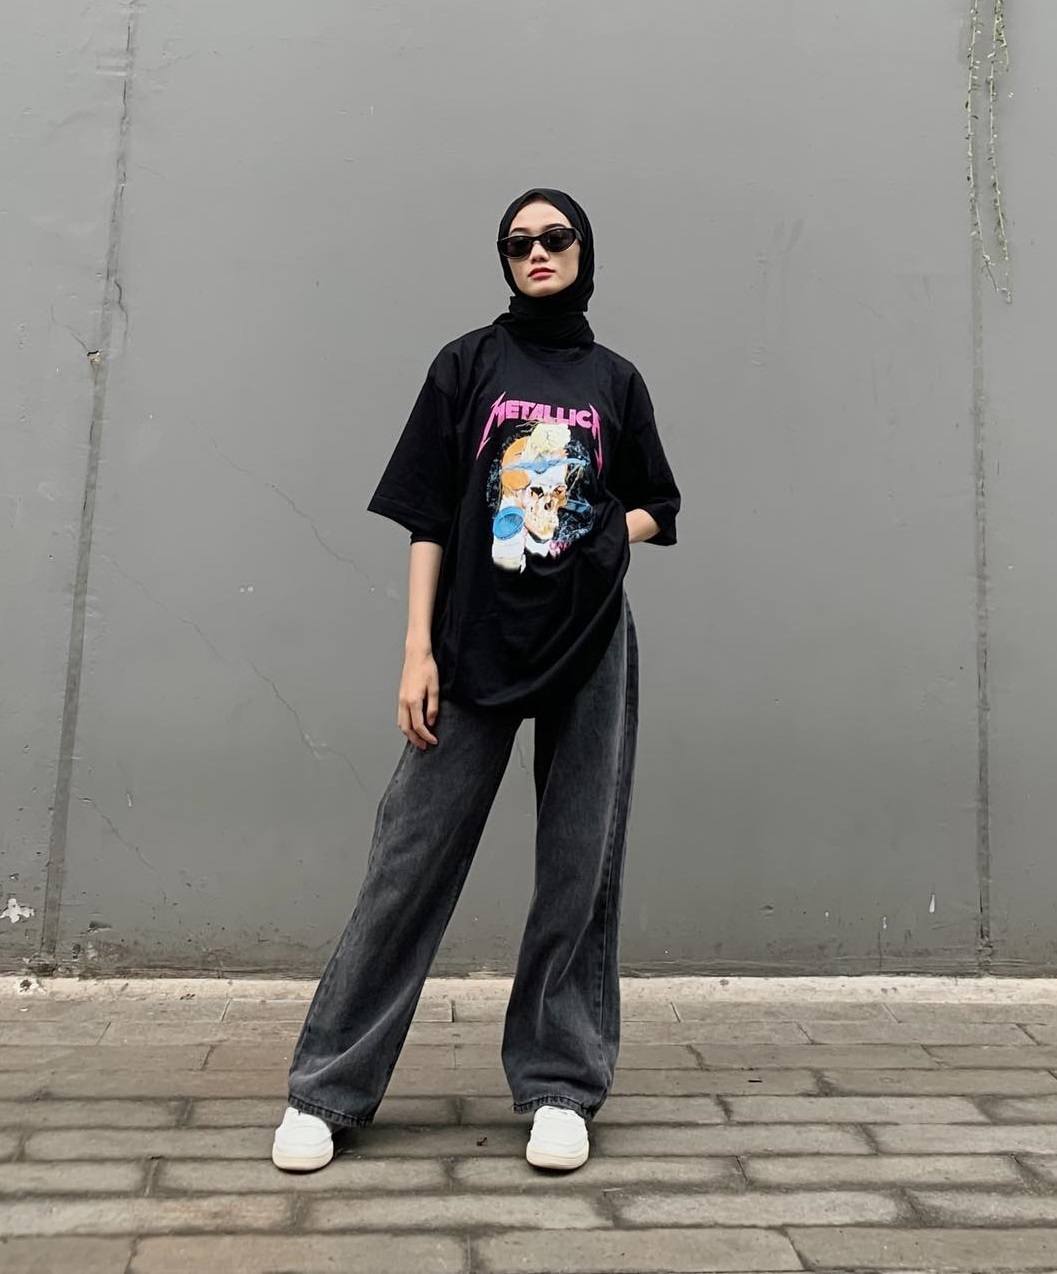 Wanita Indonesia memakai hijab hitam dengan kaos band Metallica dan celana jeans panjang.